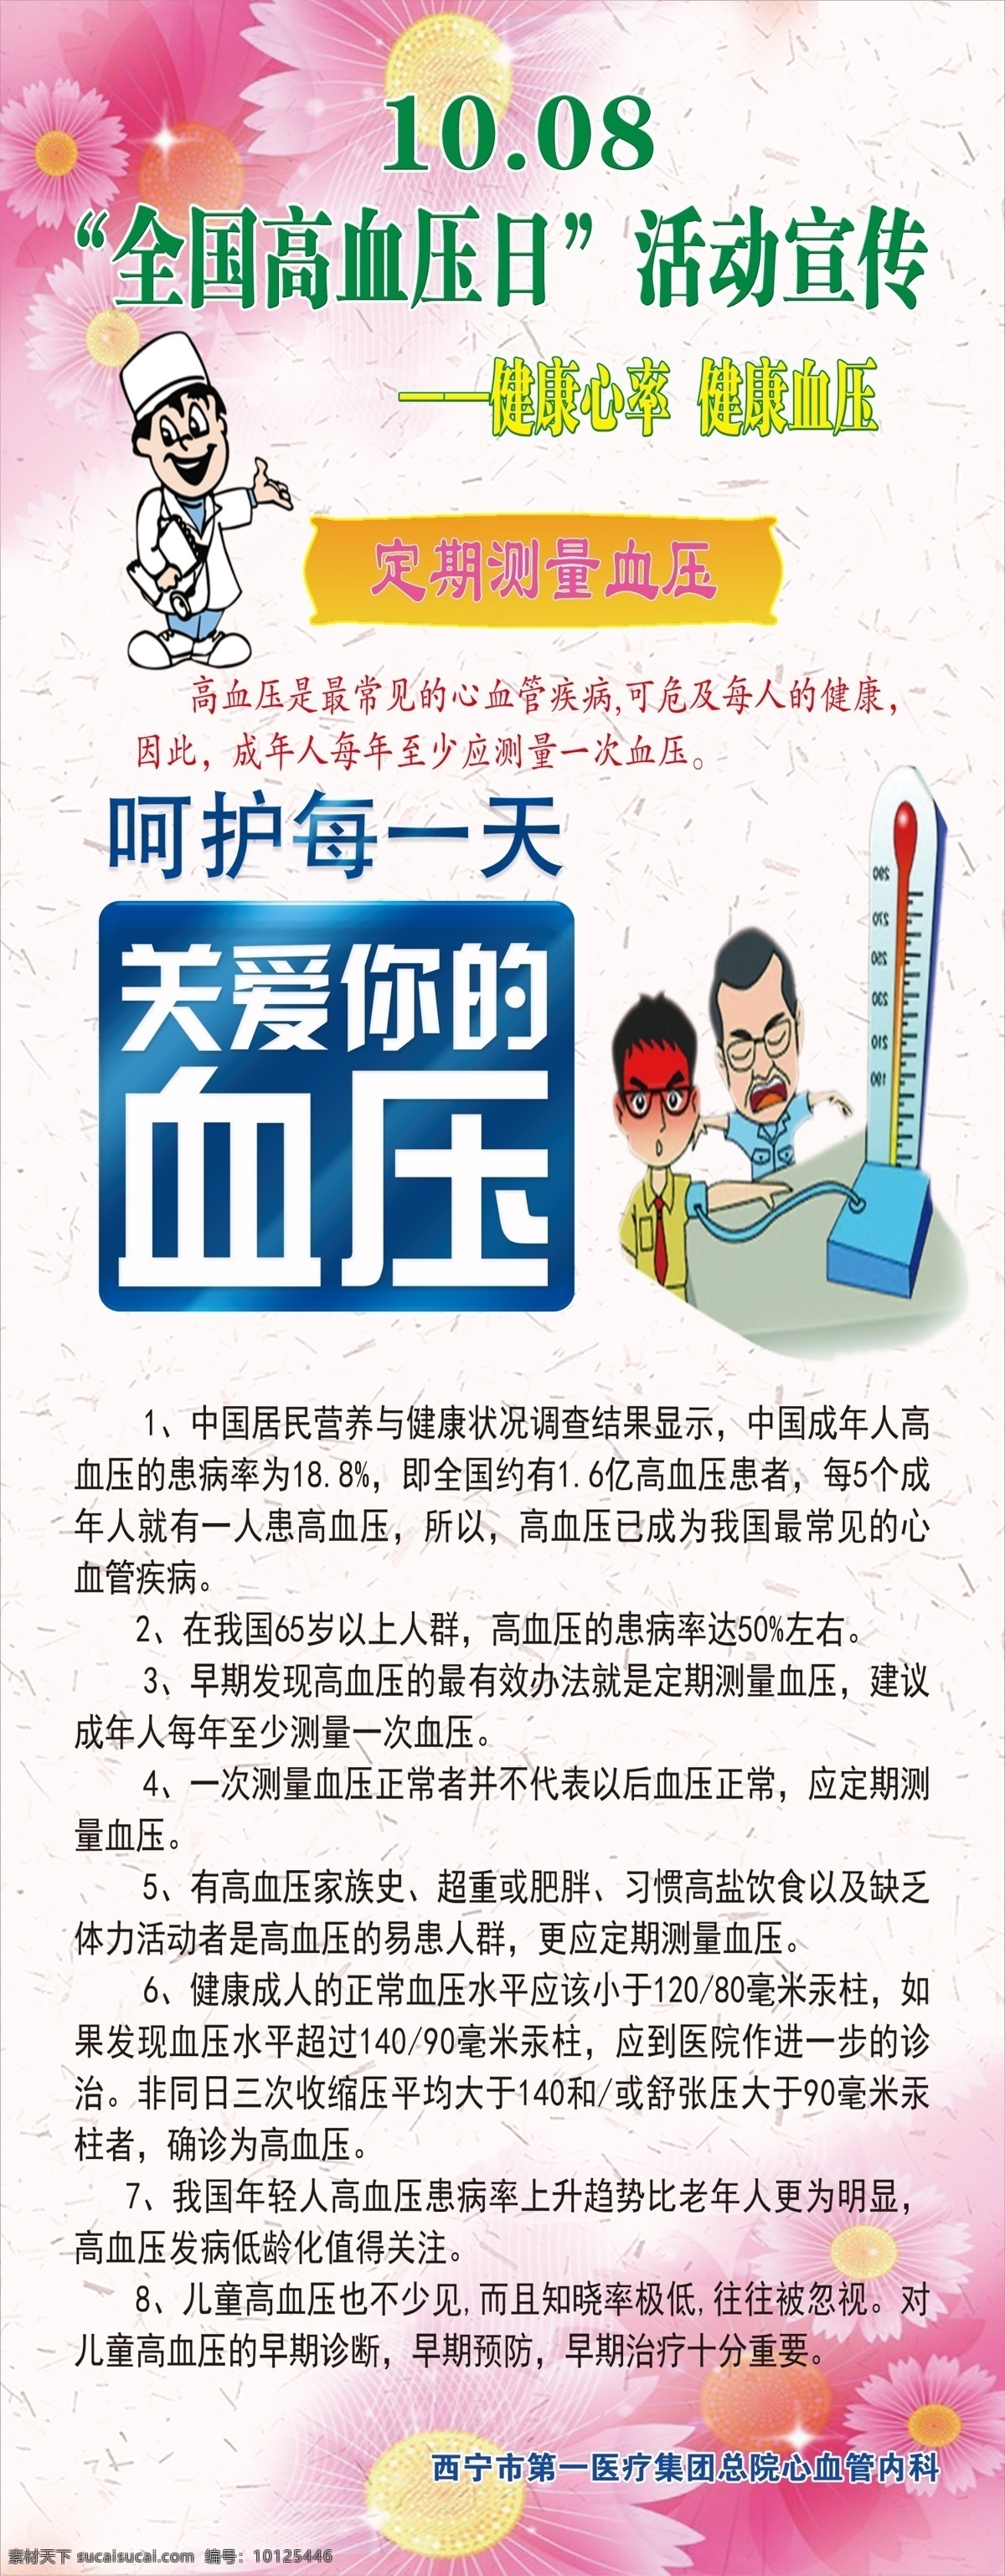 中国 高血压 日 展架 高血压日 中国高血压日 高血压展架 展板模板